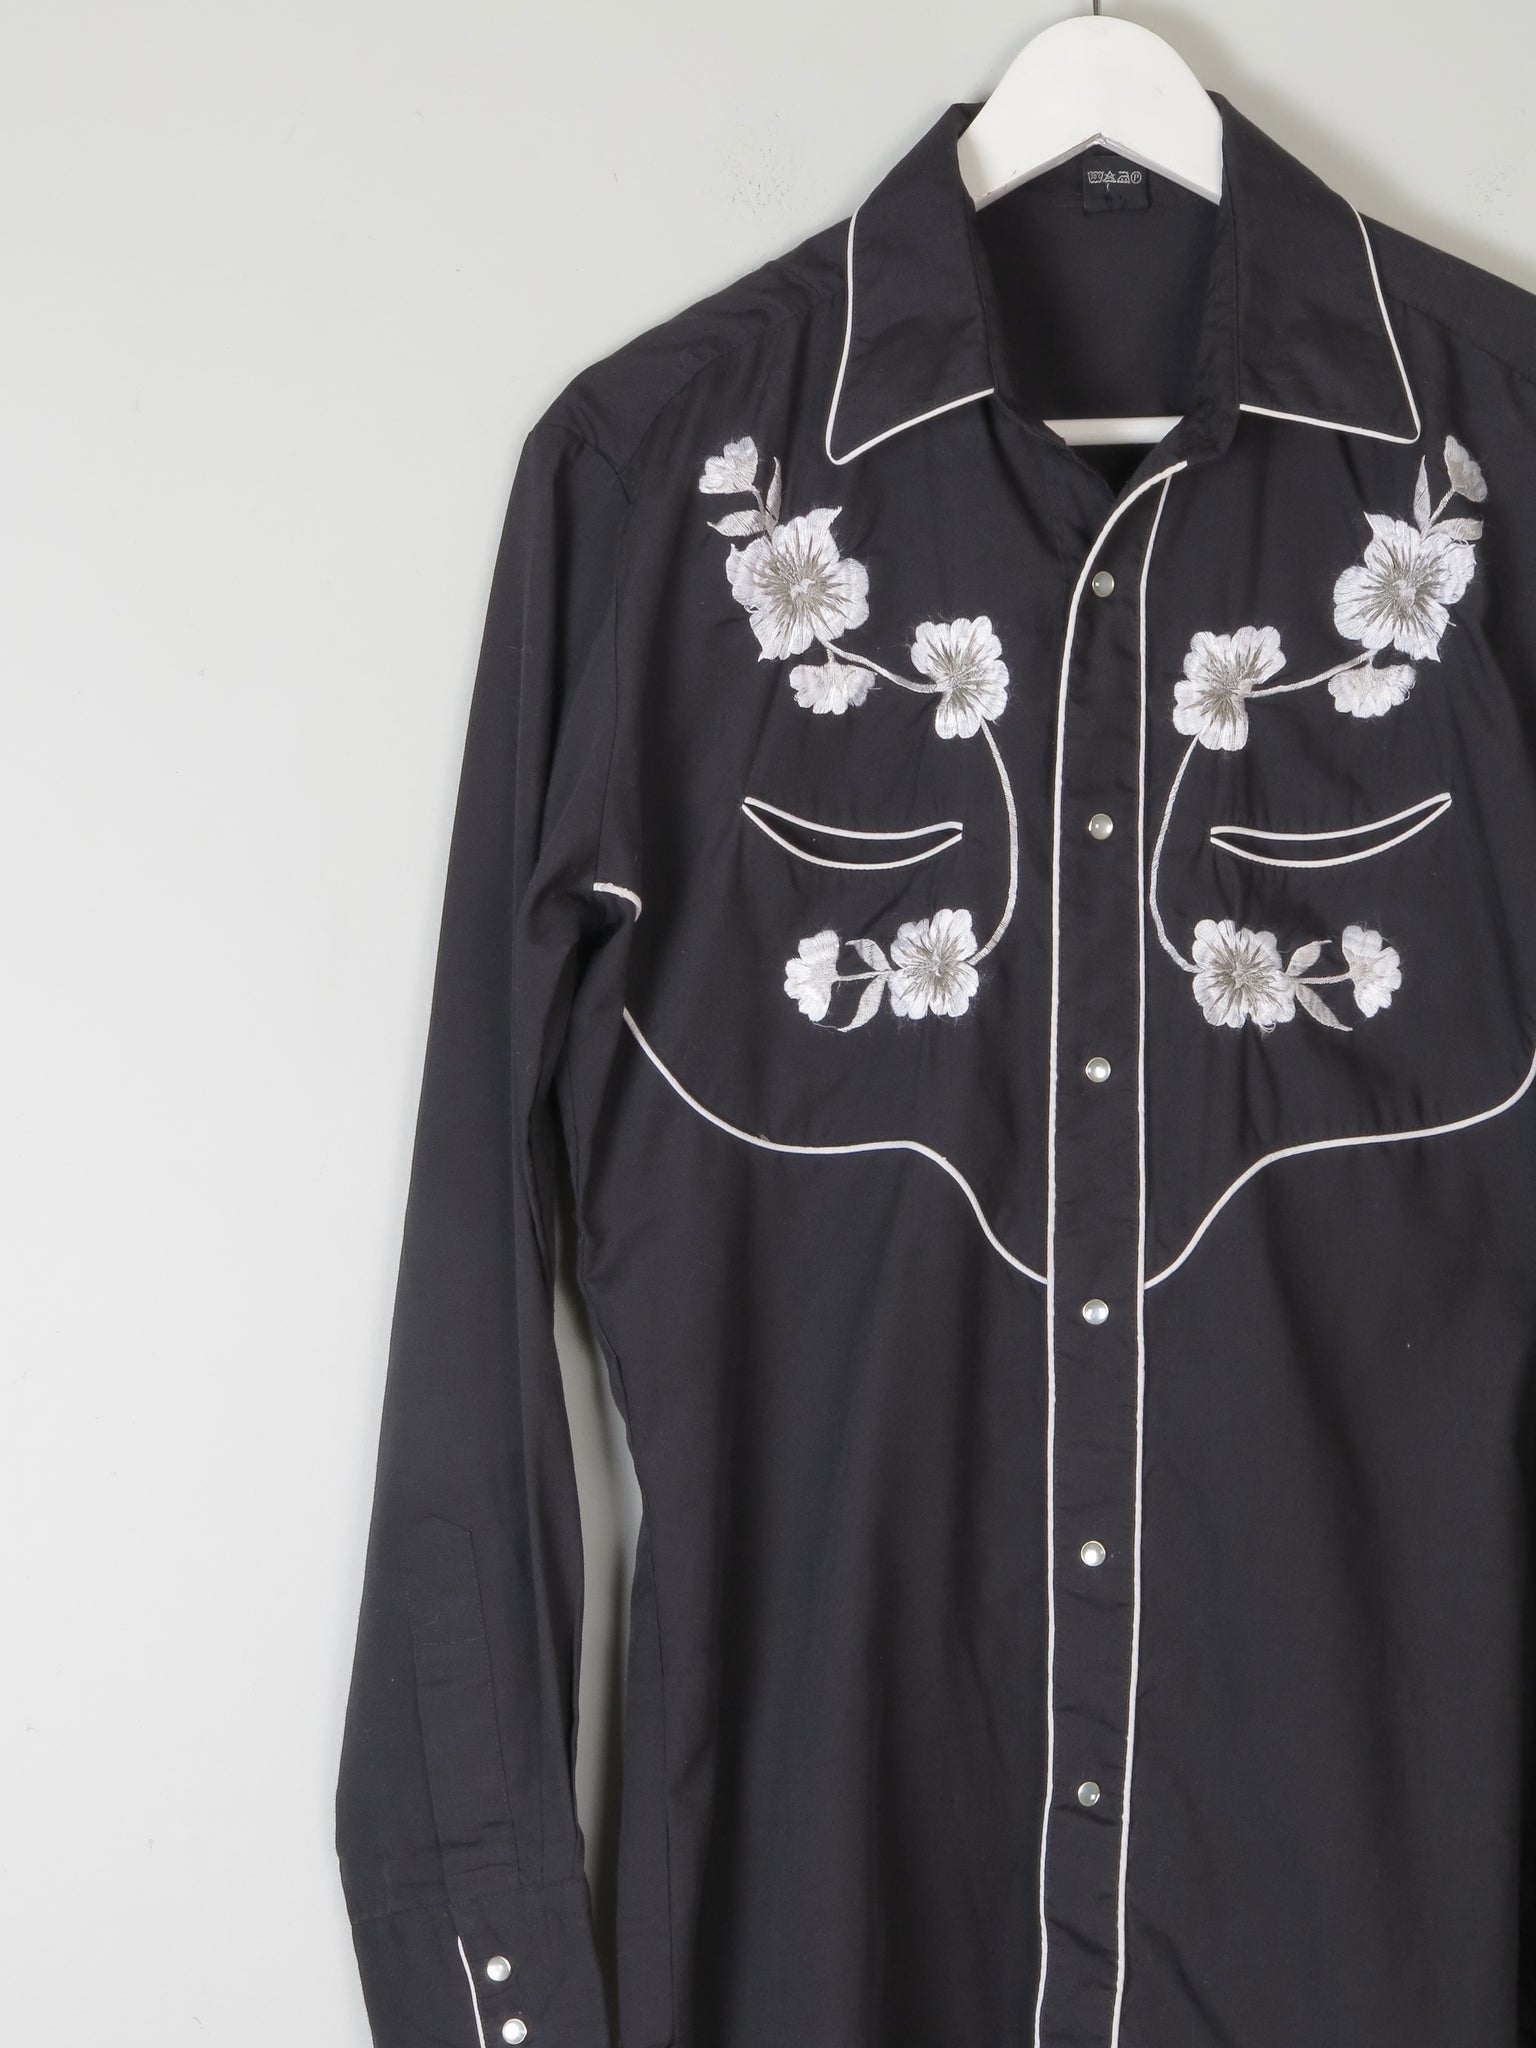 Men's Black Vintage Embroidered Western Shirt S - The Harlequin